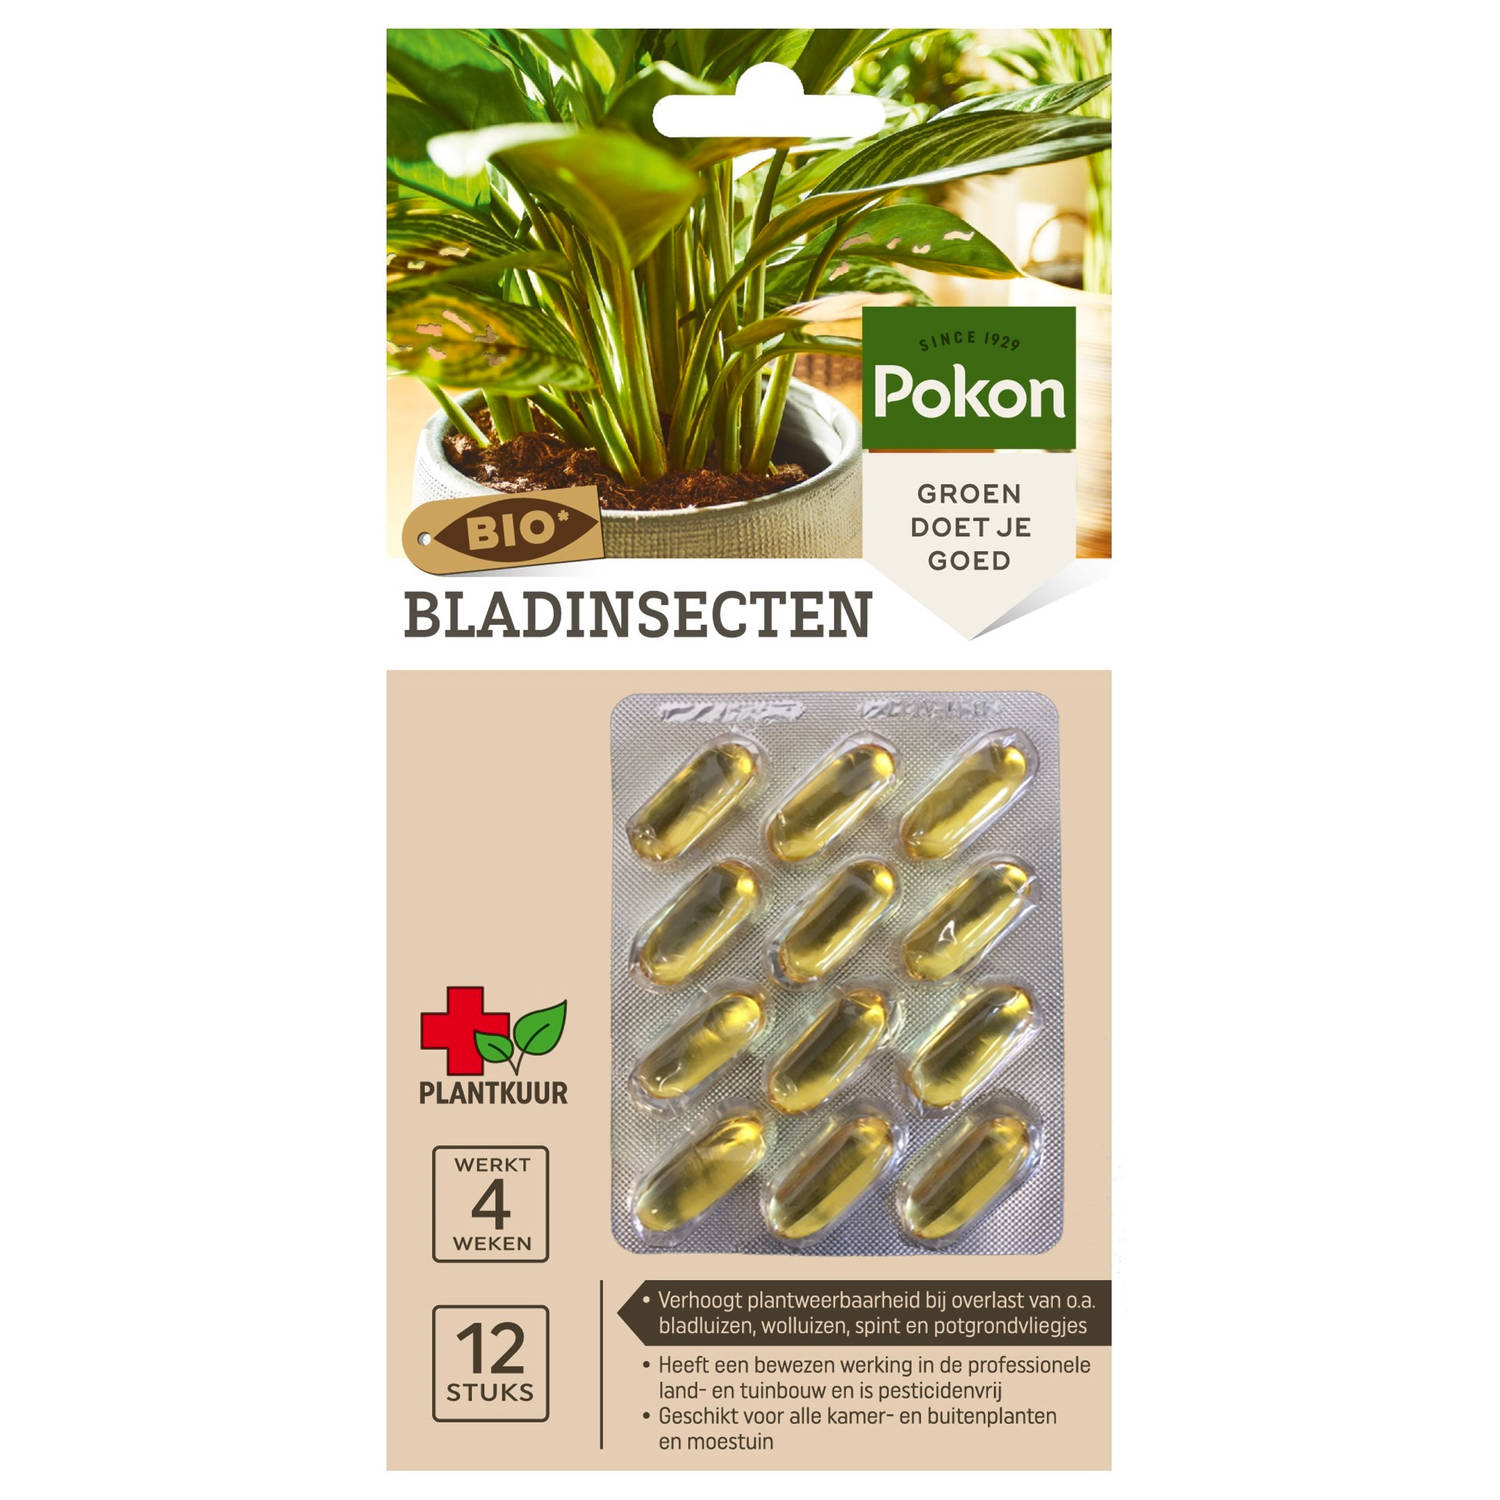 Bio Plantkuur bladinsecten capsules 12 stuks Pokon